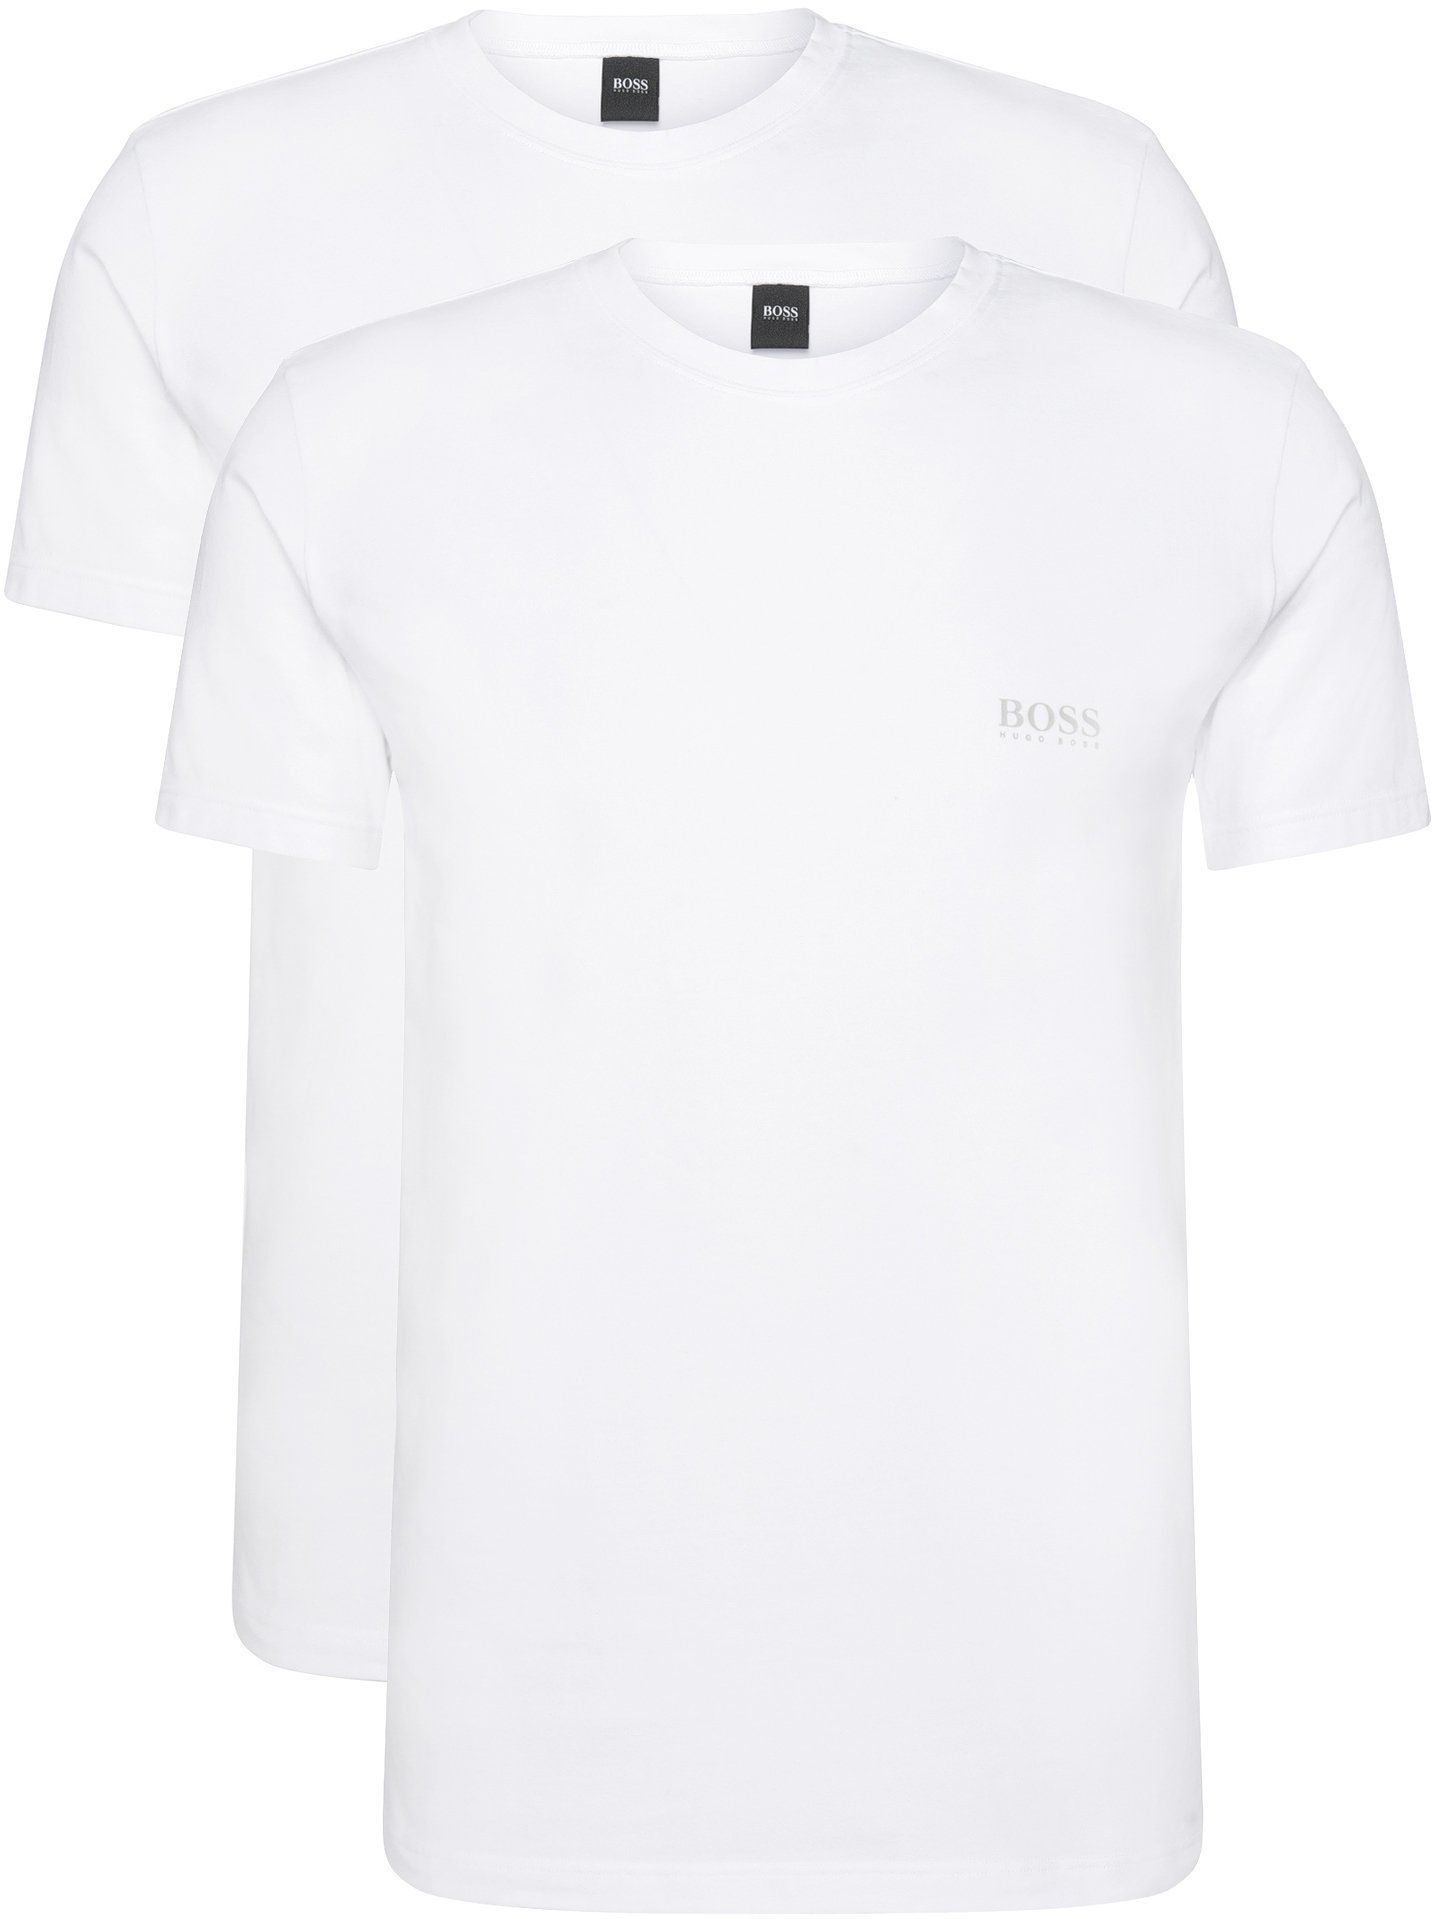 Hugo Boss T Shirt Regular Fit 2-Pack White size L